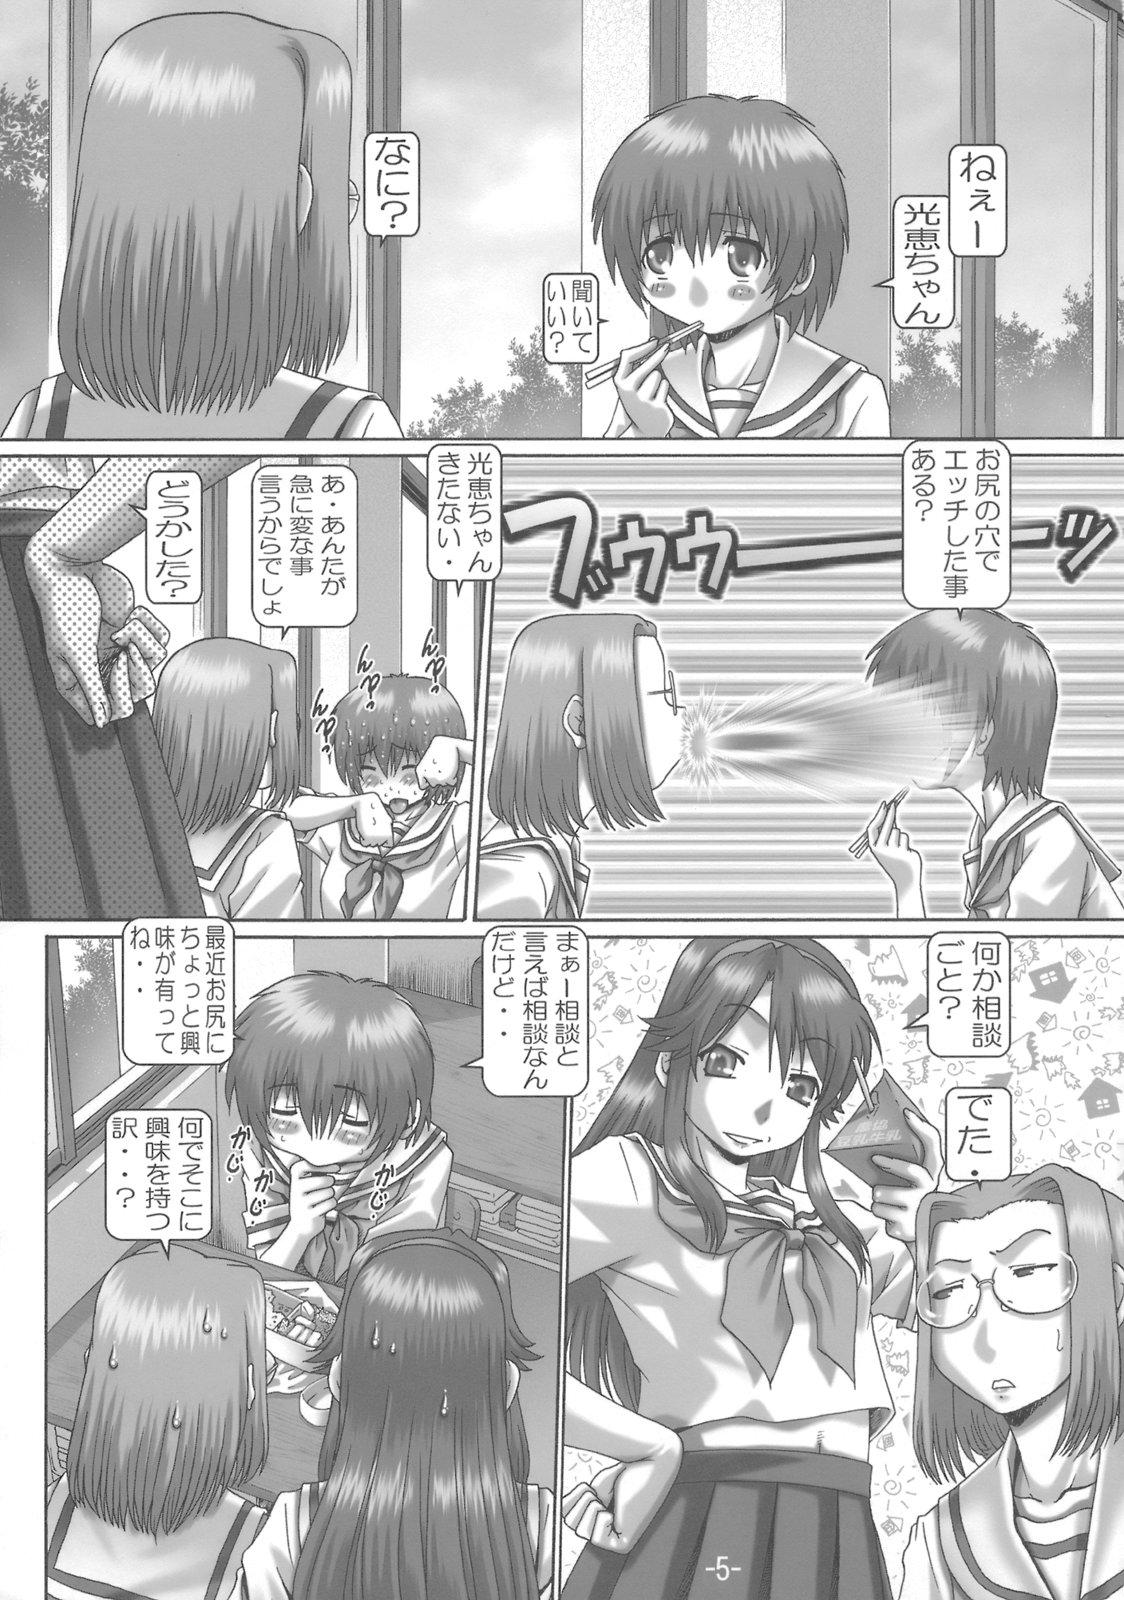 Titties EMPIRE HARD CORE 6 - Fate stay night The melancholy of haruhi suzumiya Gundam seed destiny Gundam seed Kamichu Jerkoff - Page 4